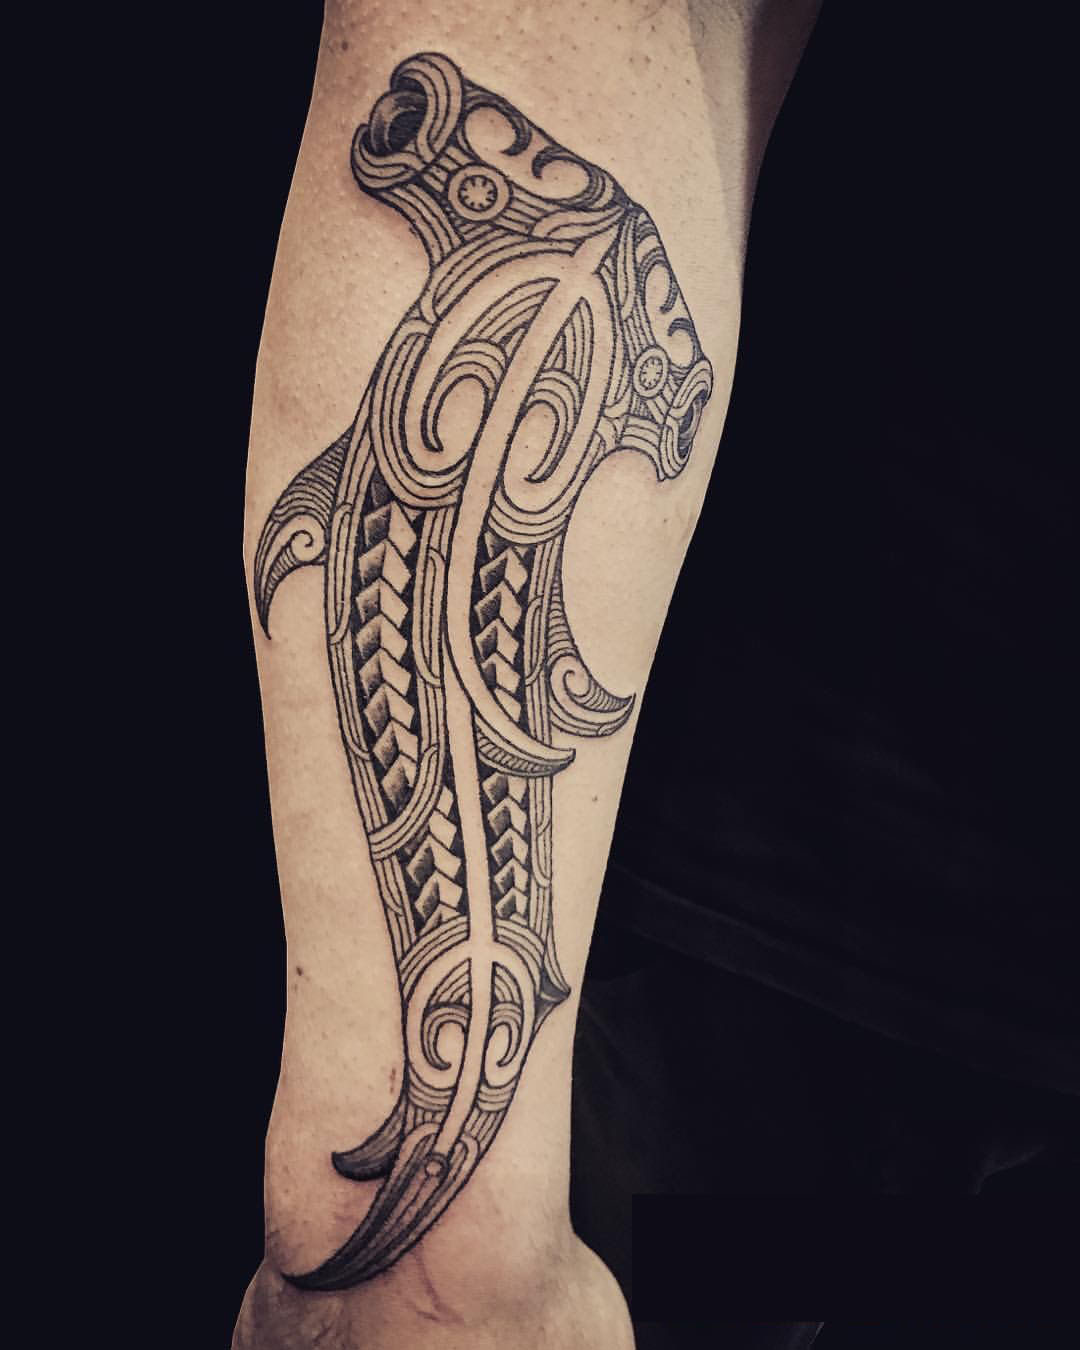 Xăm hình Maori ở cánh tay